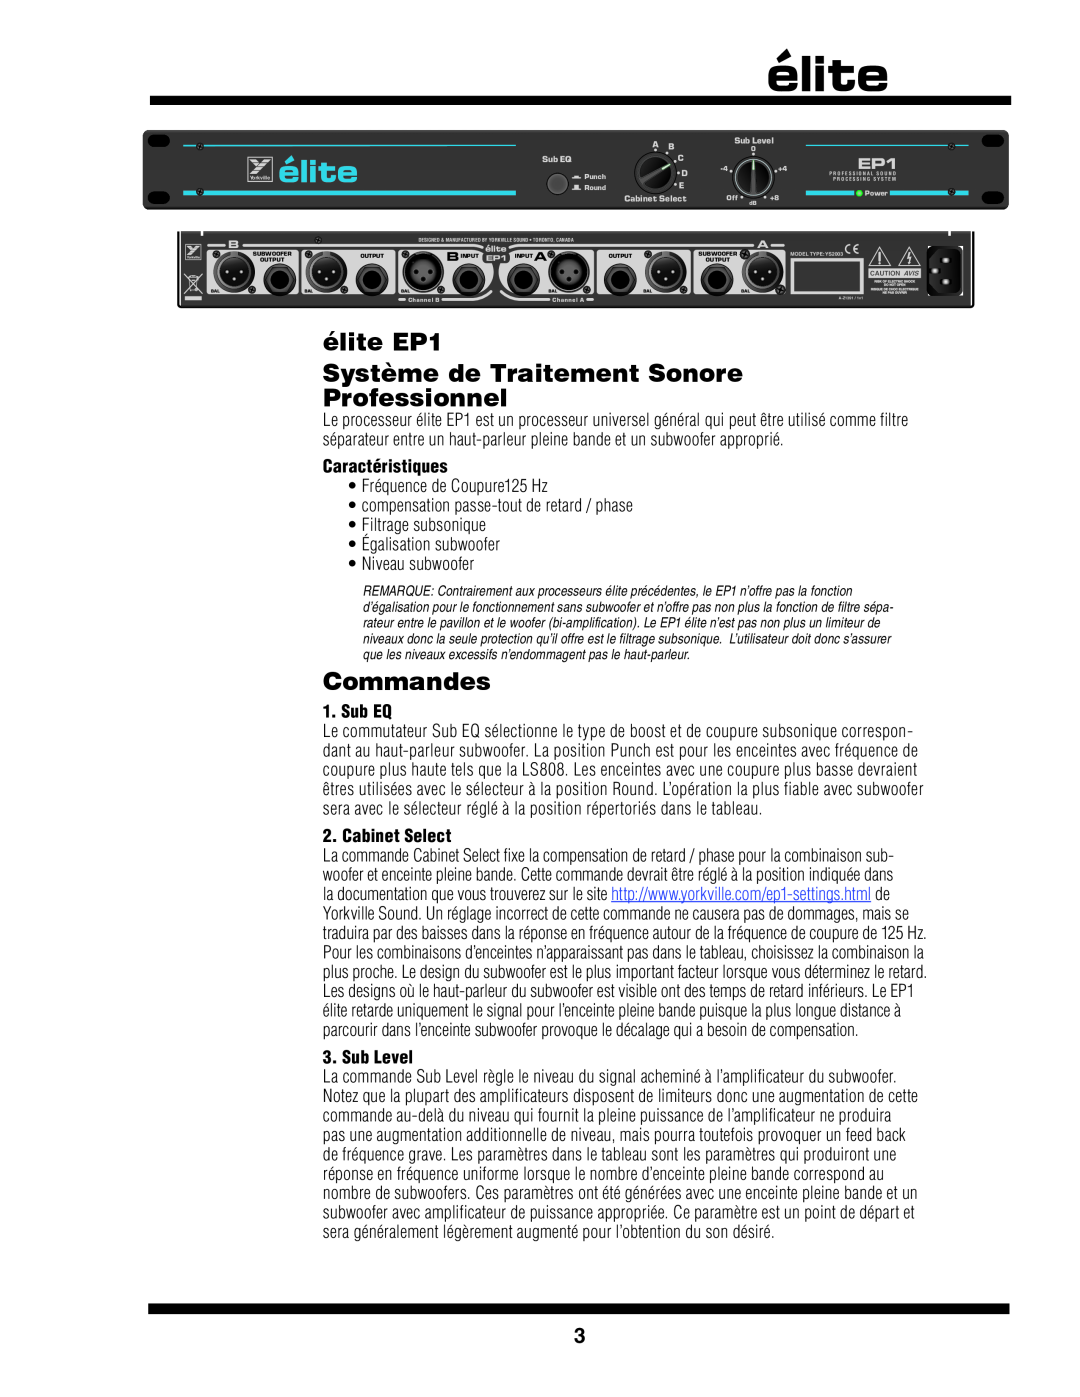 Yorkville Sound YS2003 Système de Traitement Sonore Professionnel, Commandes, élite EP1, Caractéristiques, Sub EQ 